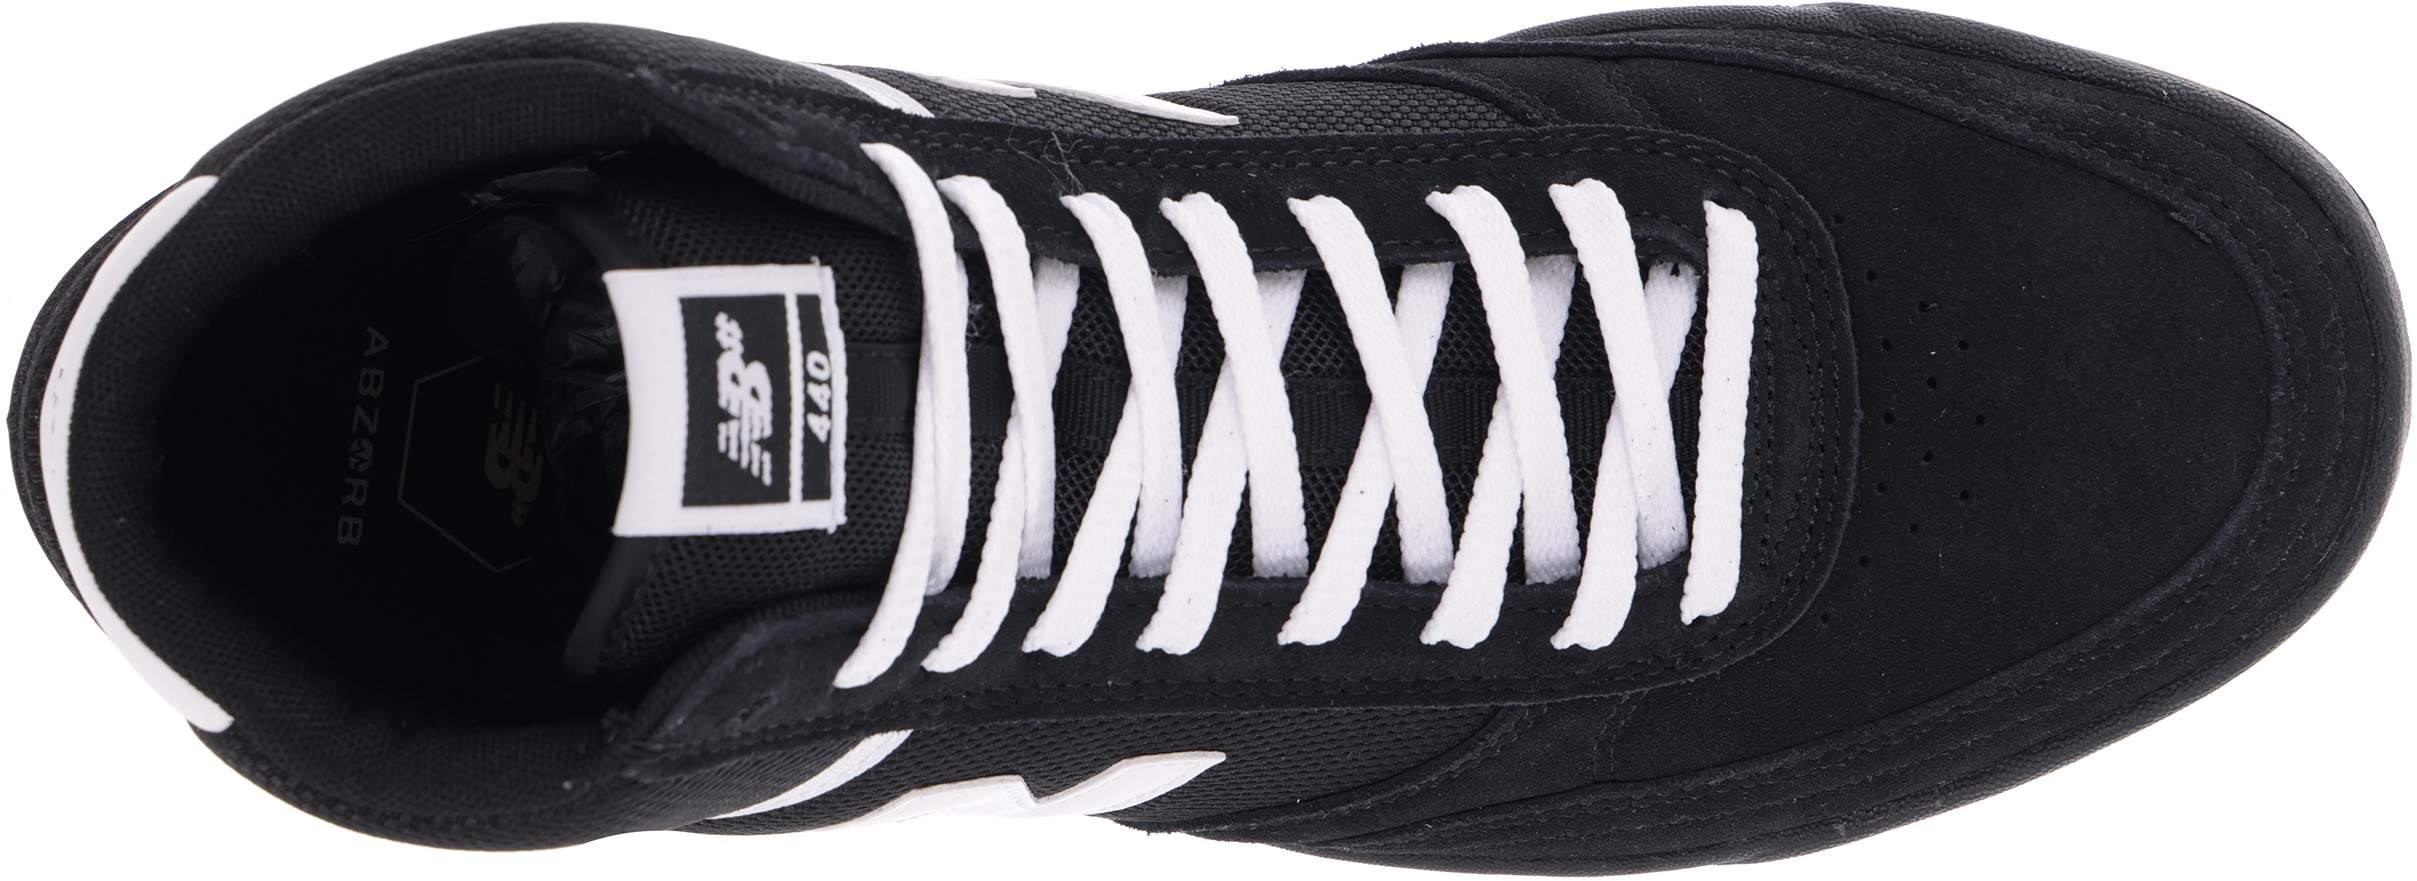 New Balance Numeric 440H Skate Shoes - black/white/black | Tactics